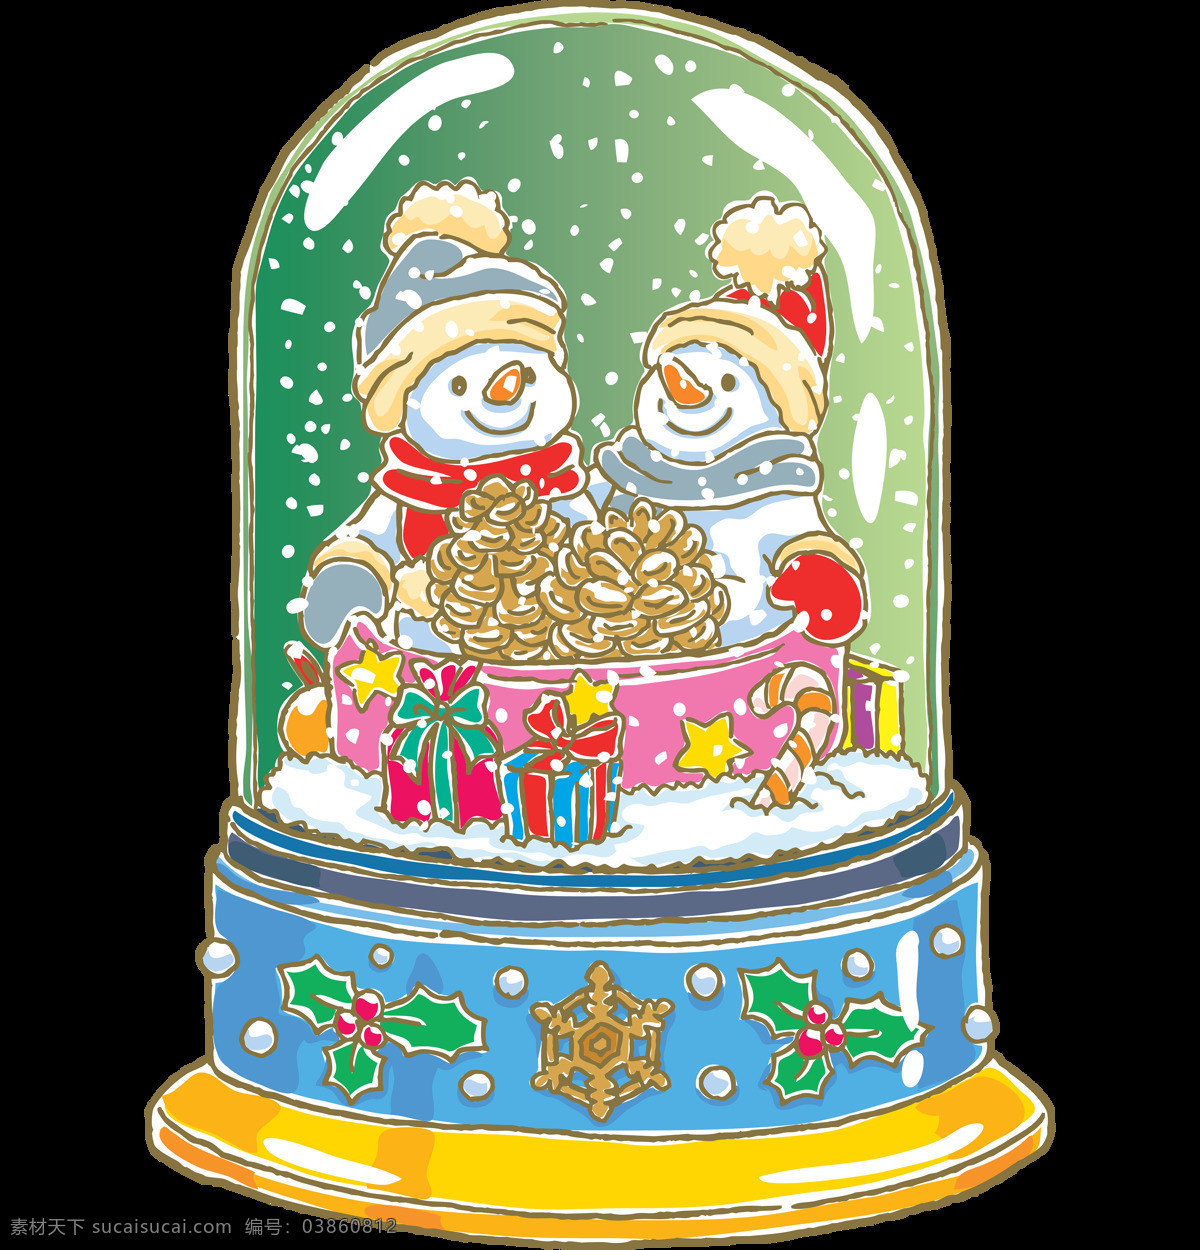 精美 圣诞 雪人 音乐盒 元素 christmas merry 平安夜 设计素材 圣诞节装饰 圣诞素材 圣诞雪人 圣诞元素下载 雪人音乐盒 雪人元素